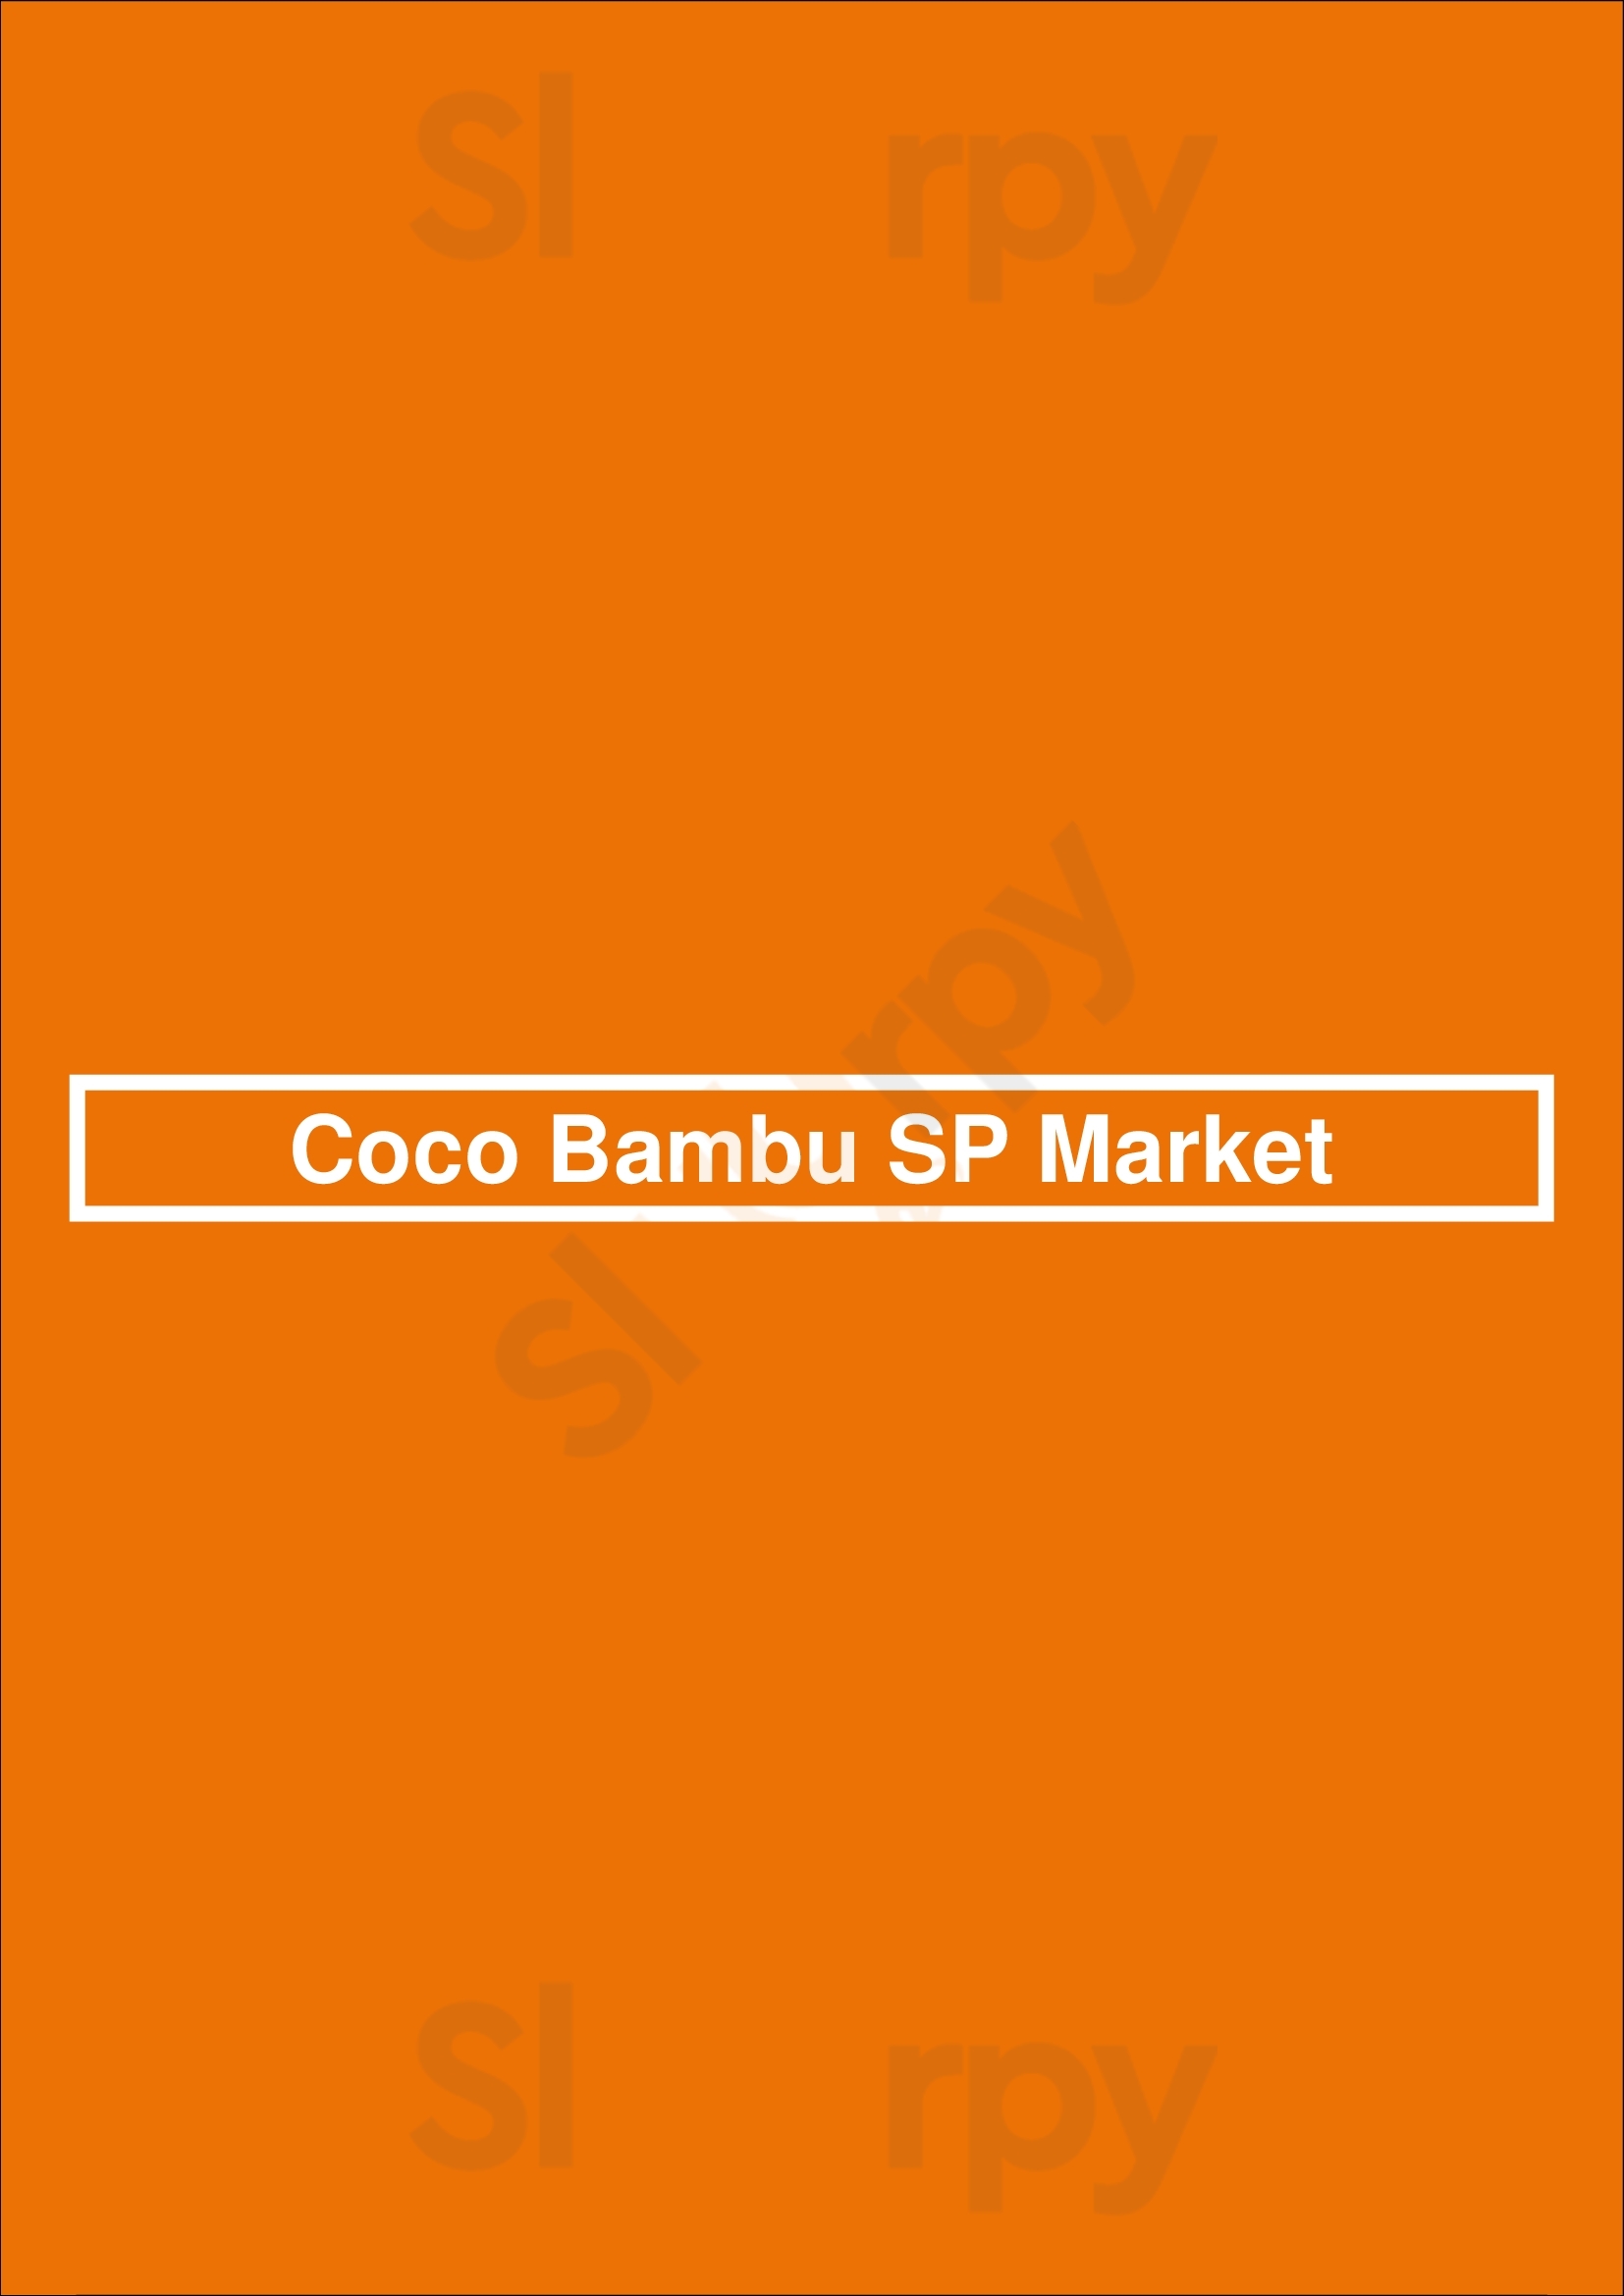 Coco Bambu Sp Market São Paulo Menu - 1